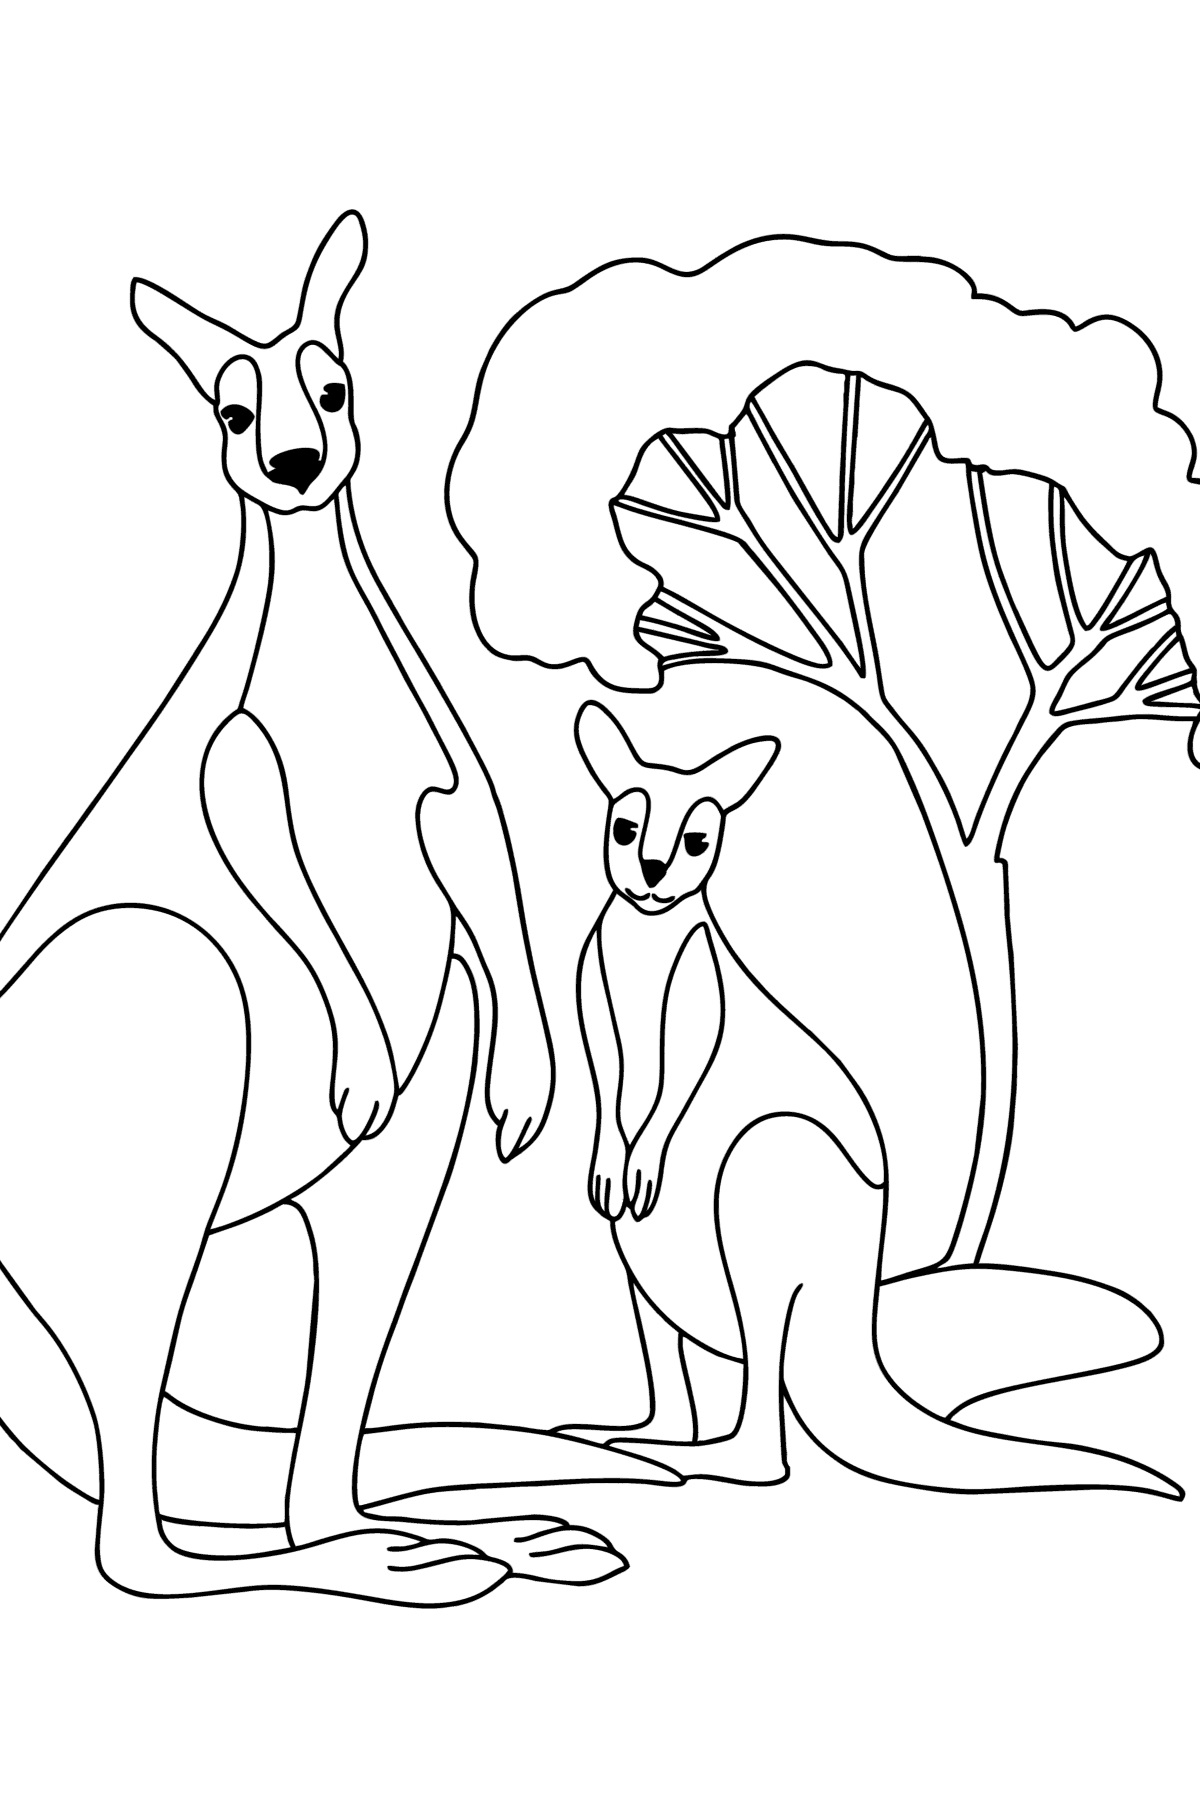 Tegning til fargelegging kenguru med baby - Tegninger til fargelegging for barn